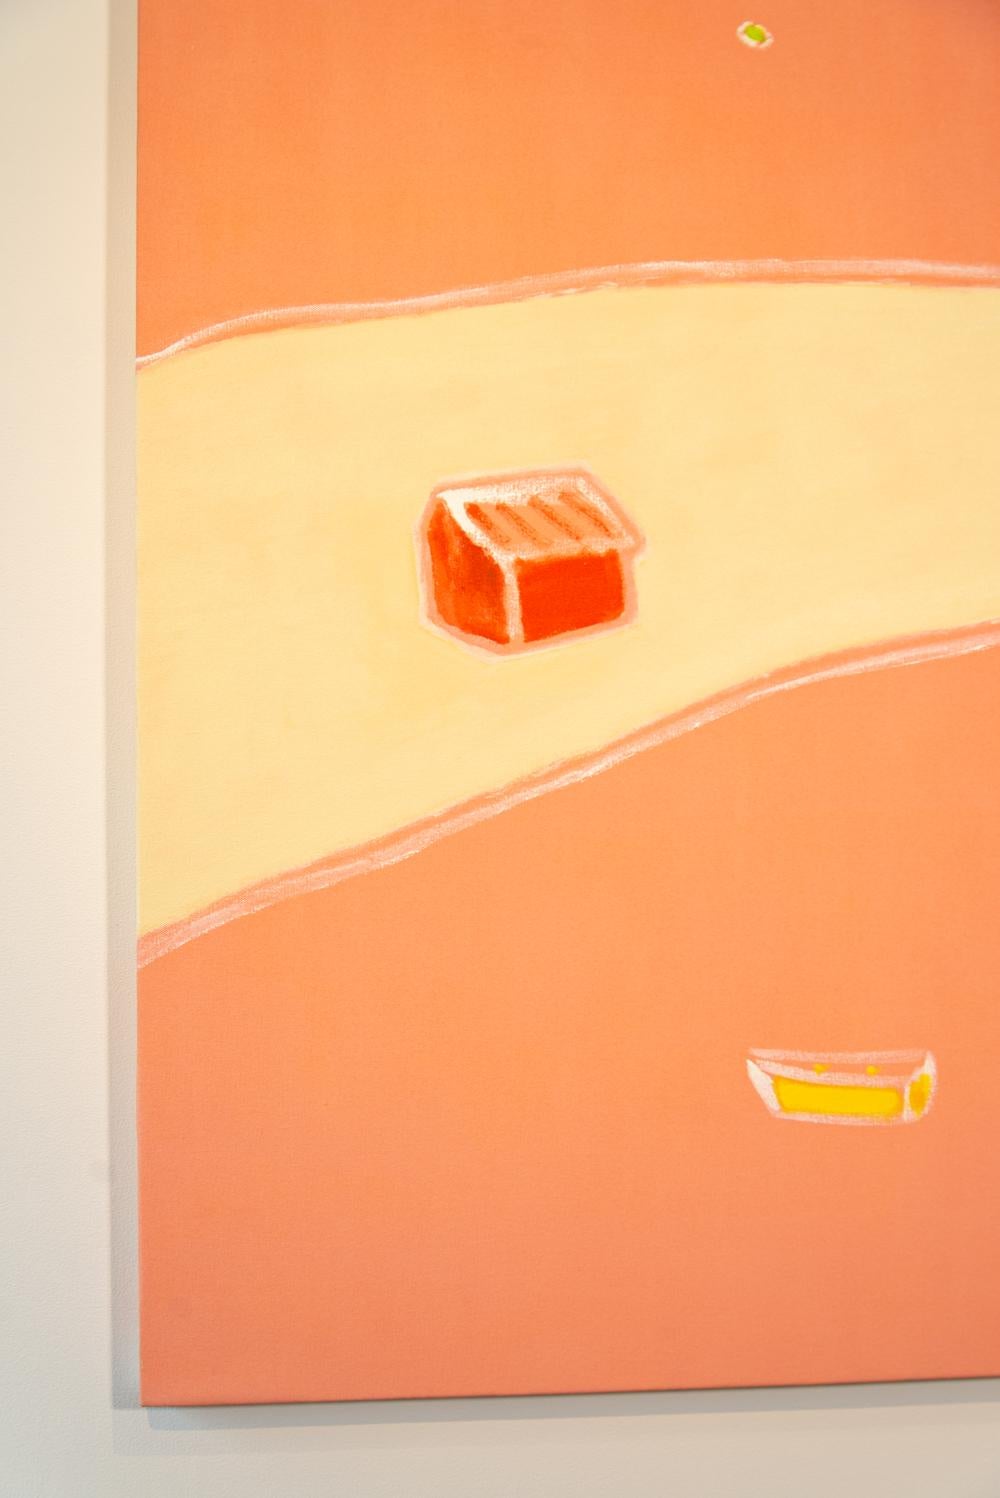 Cette peinture abstraite saisissante de l'artiste de Vancouver Pat Service a été inspirée par une aquarelle d'un lac en été. Des eaux orange vif, une bande d'arbres en jaune tendre, une cabane en orange, un bateau bleu sur le rivage et un radeau en